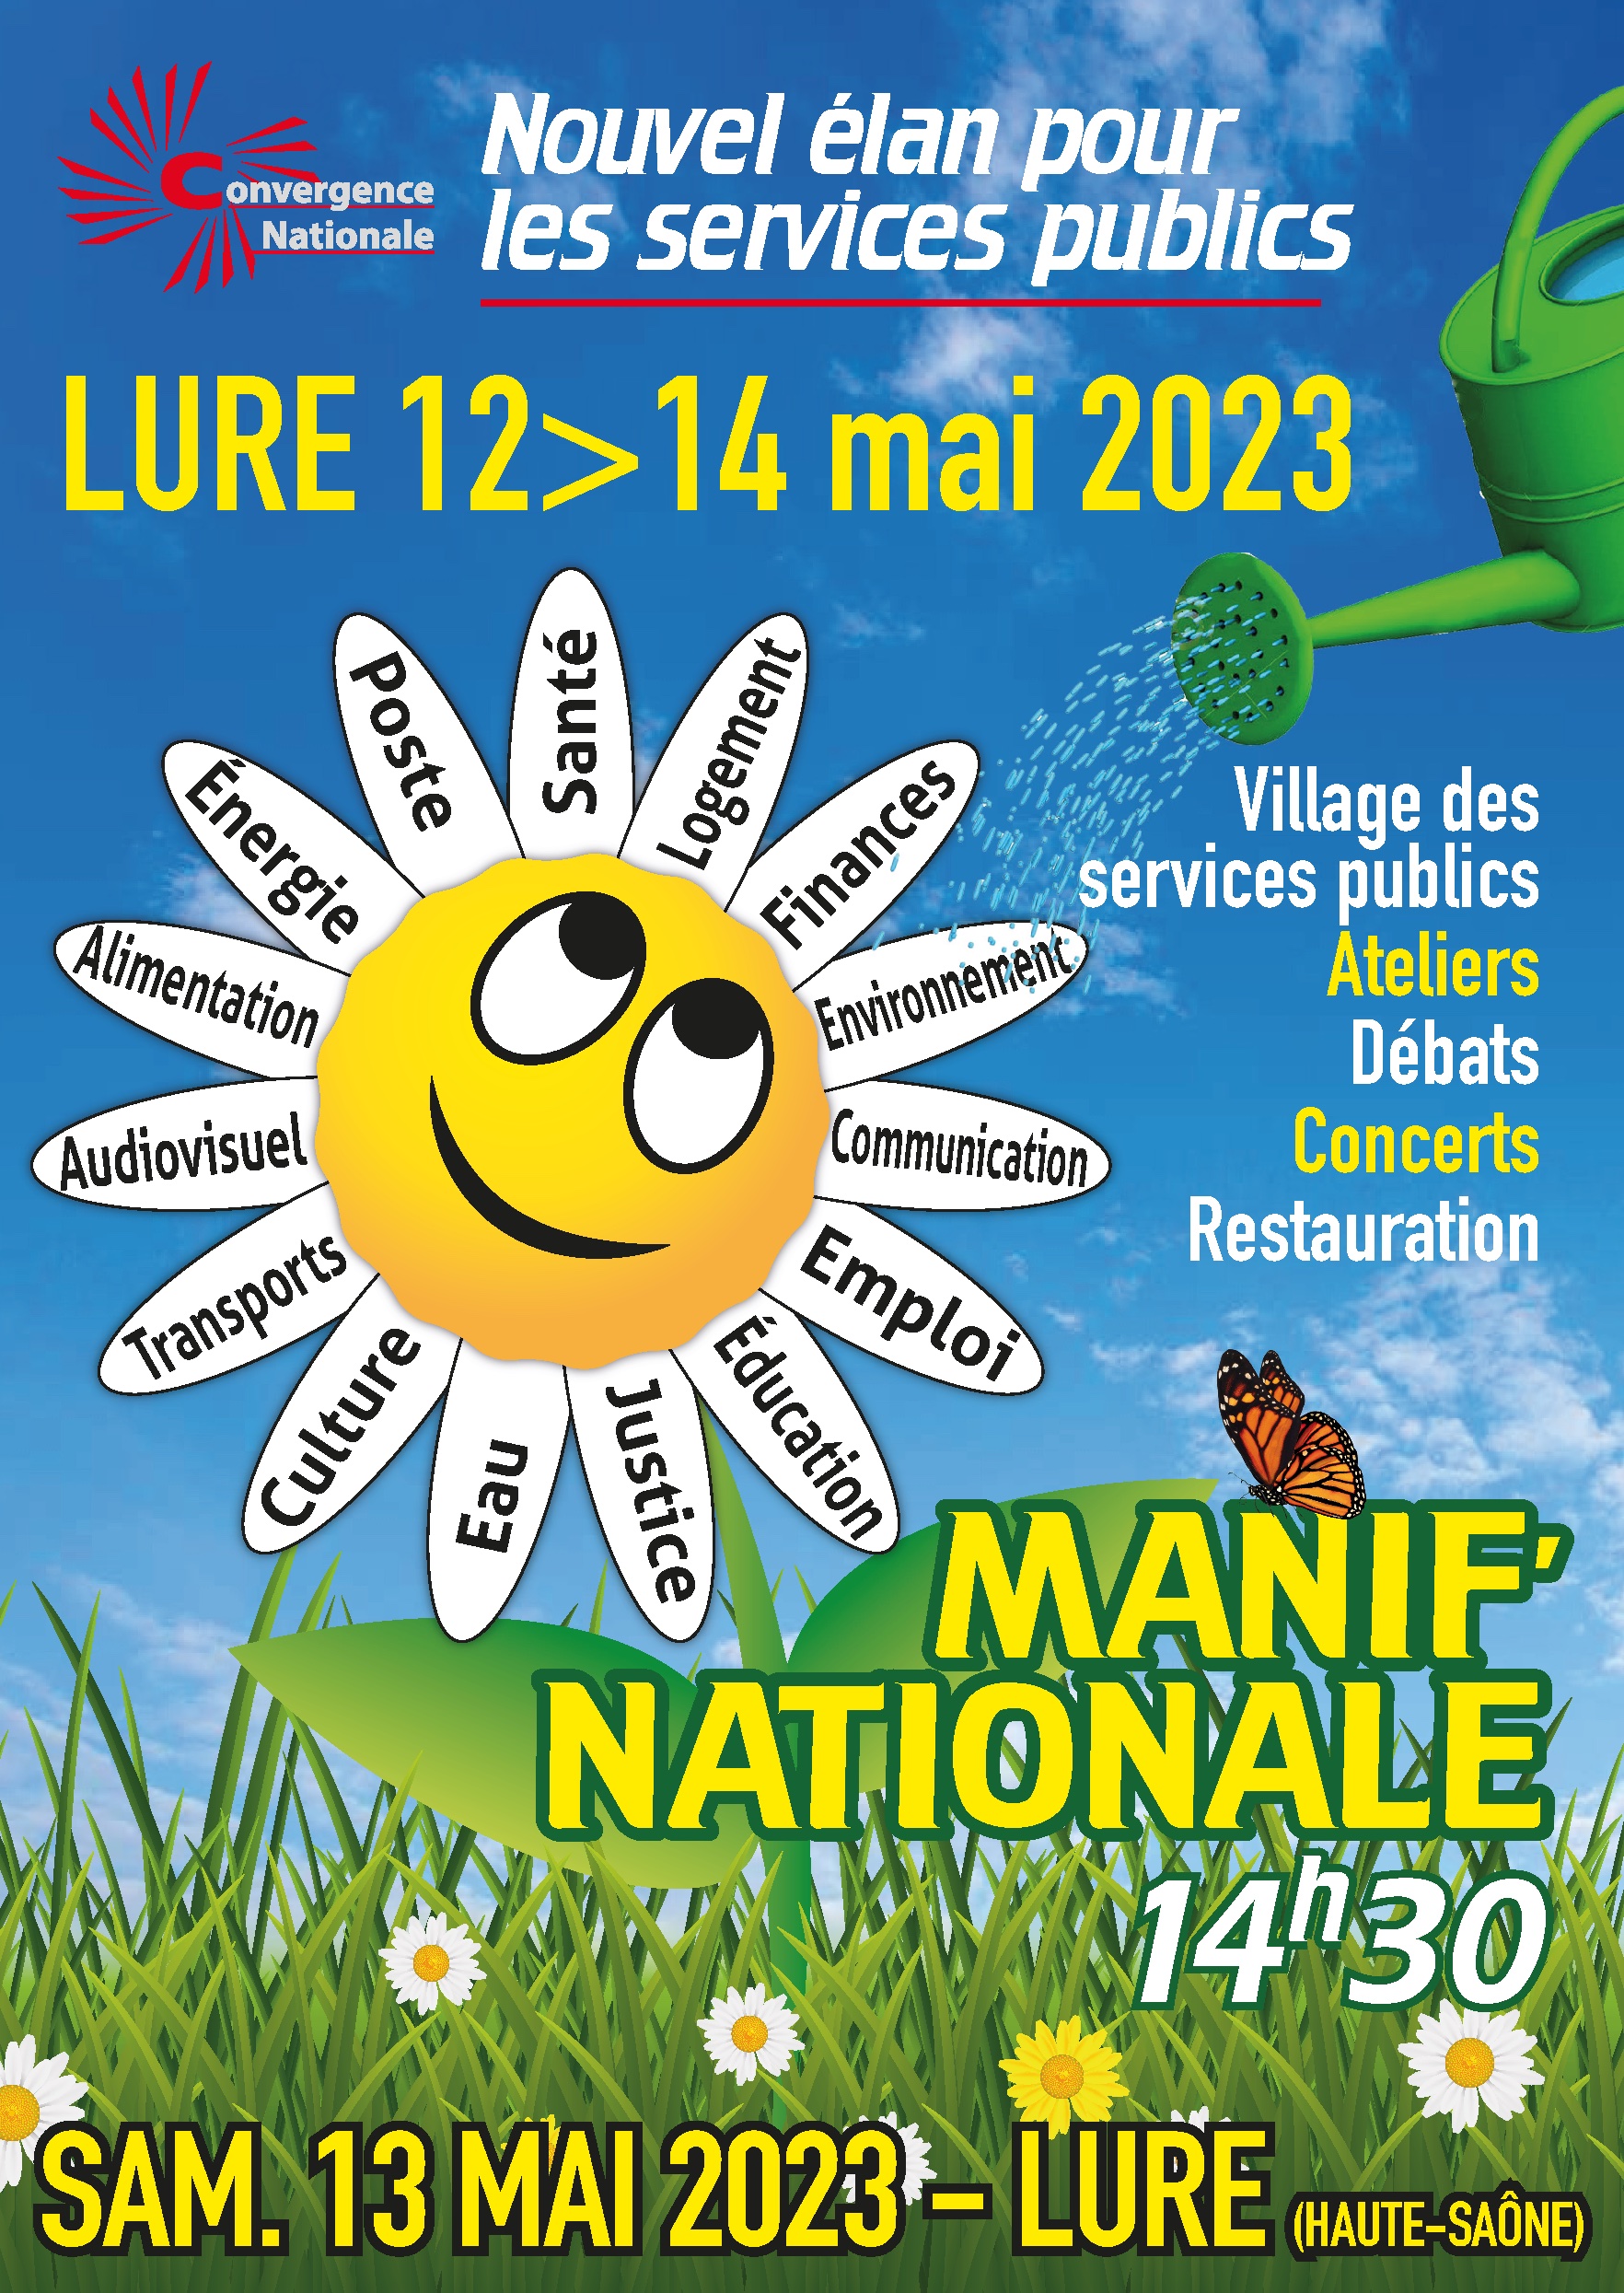 Les Affiches de Haute-Saône annonce la manifestation de Lure pour les services publics du 12 au 14 mai prochains